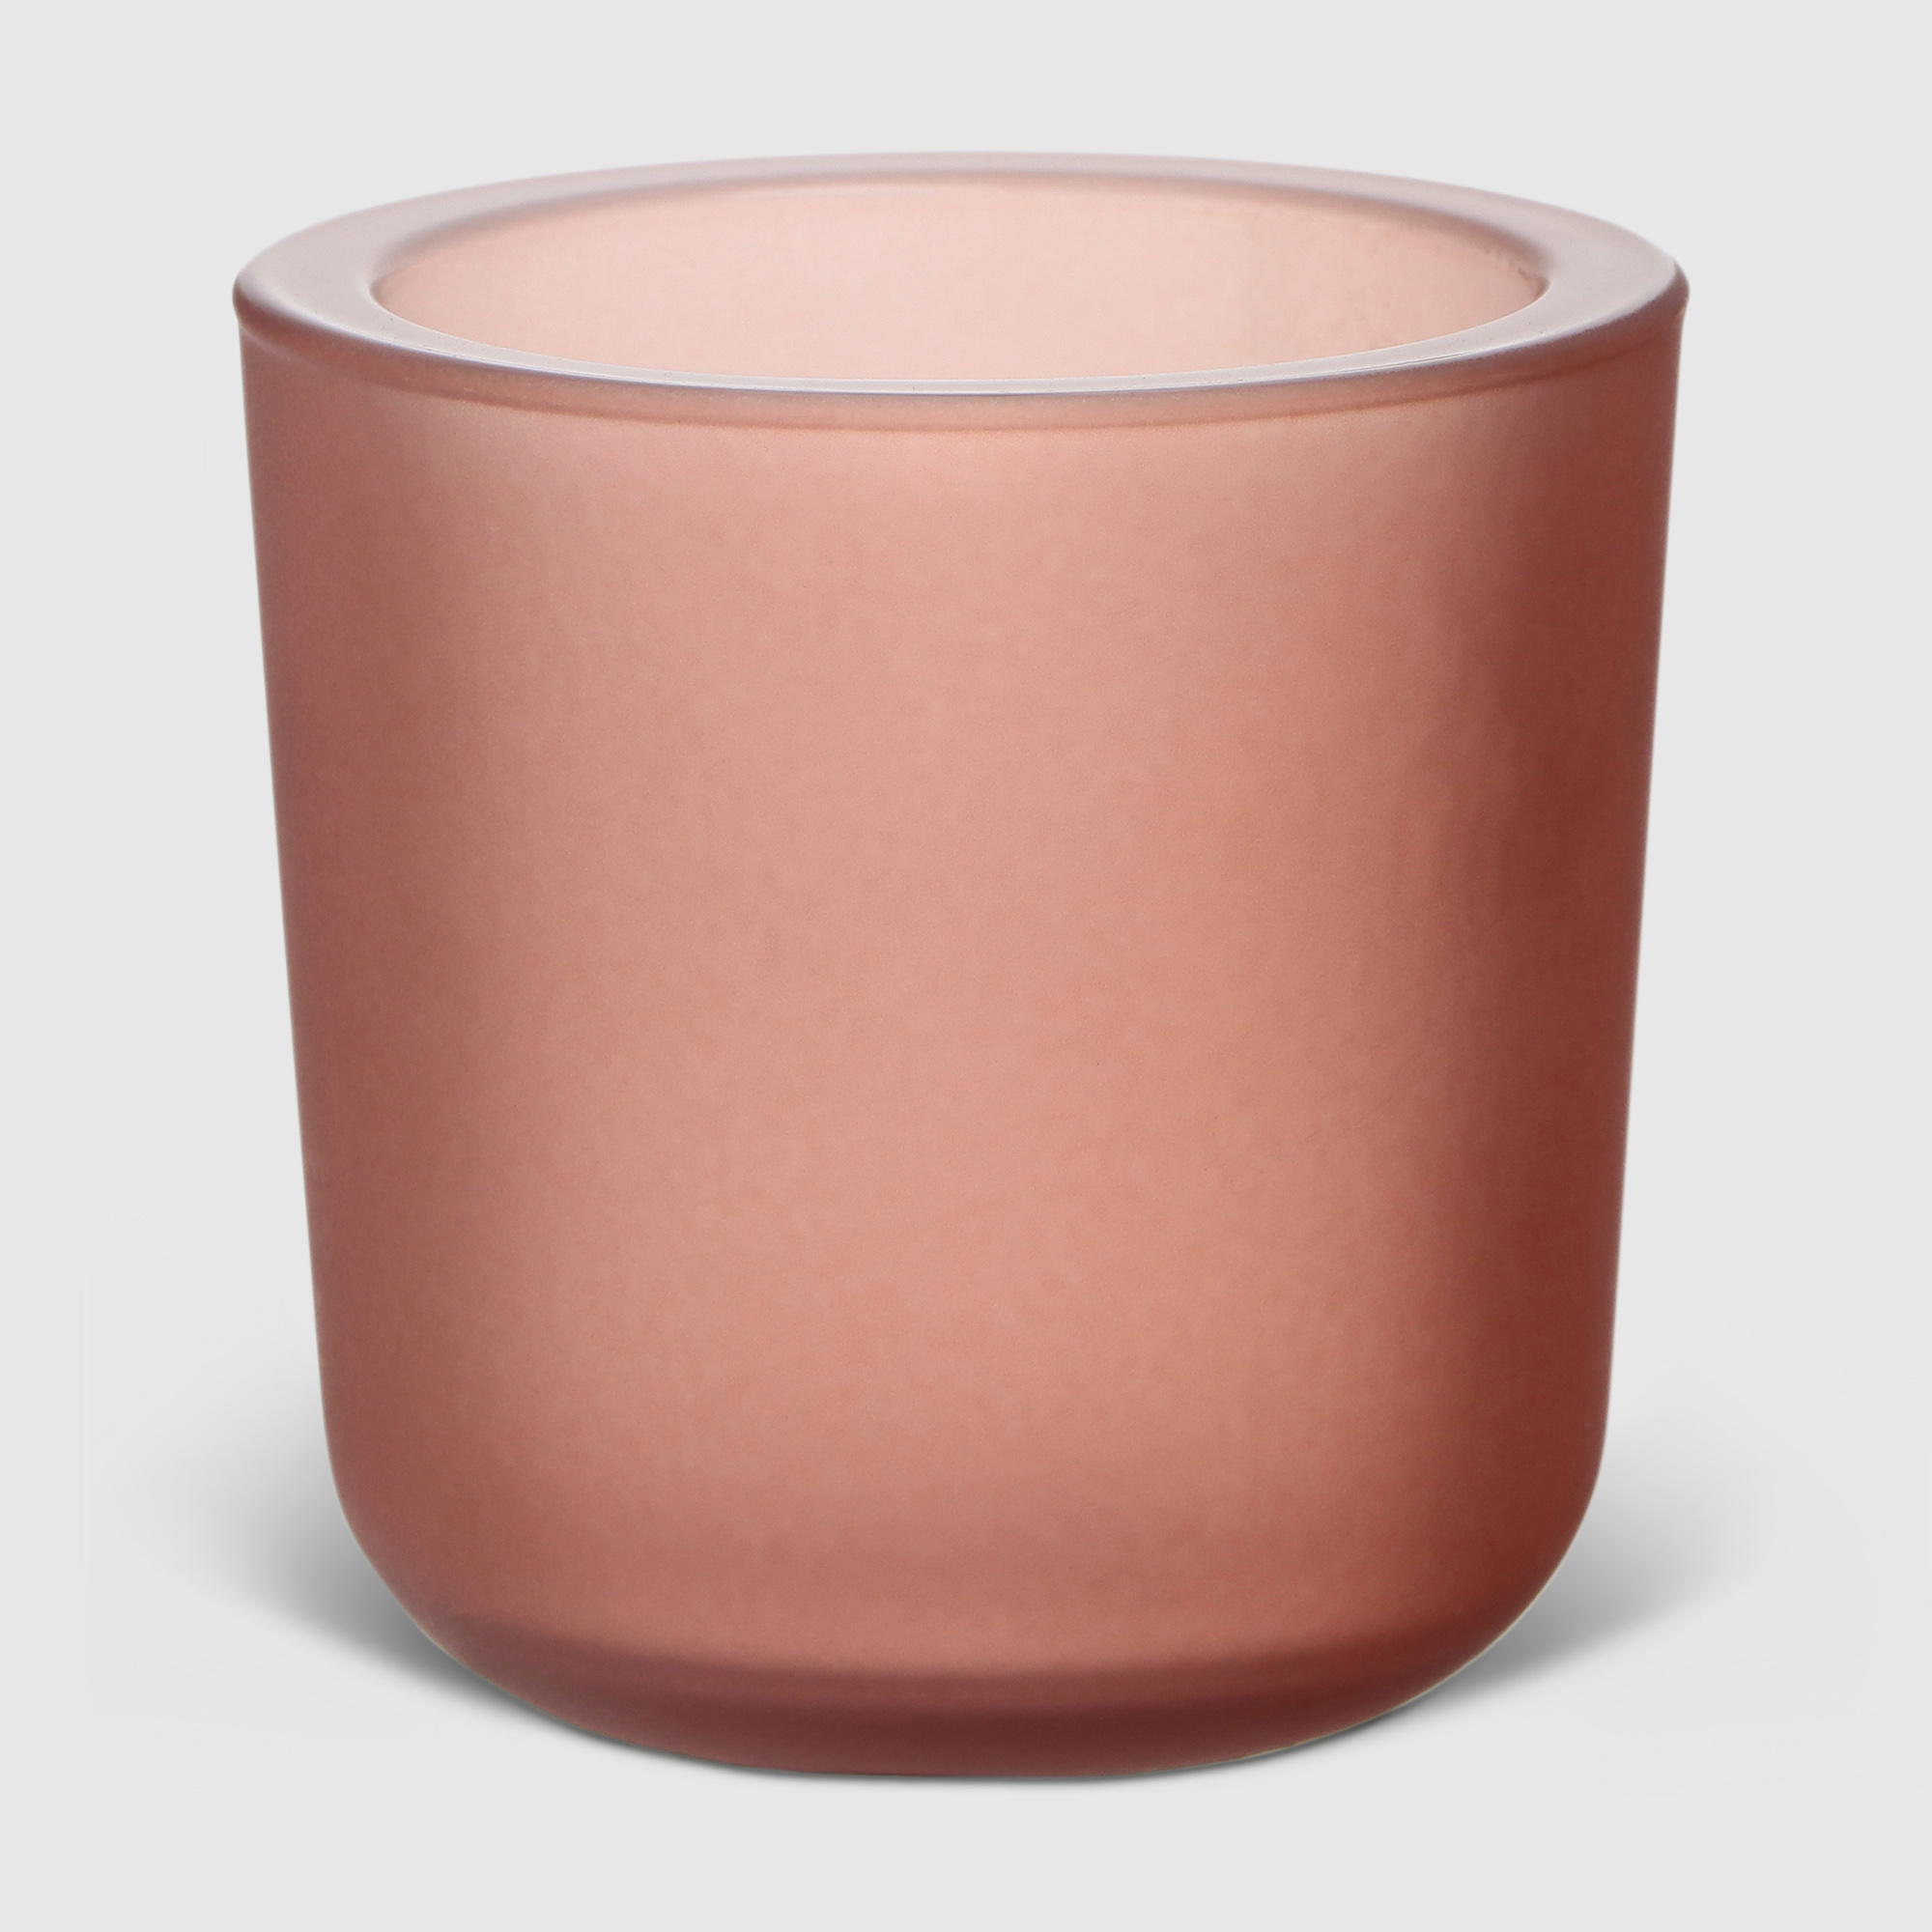 Ваза Hakbijl glass Yannik Розовая 8х8 см ваза san miguel peach cream розовая 40 см